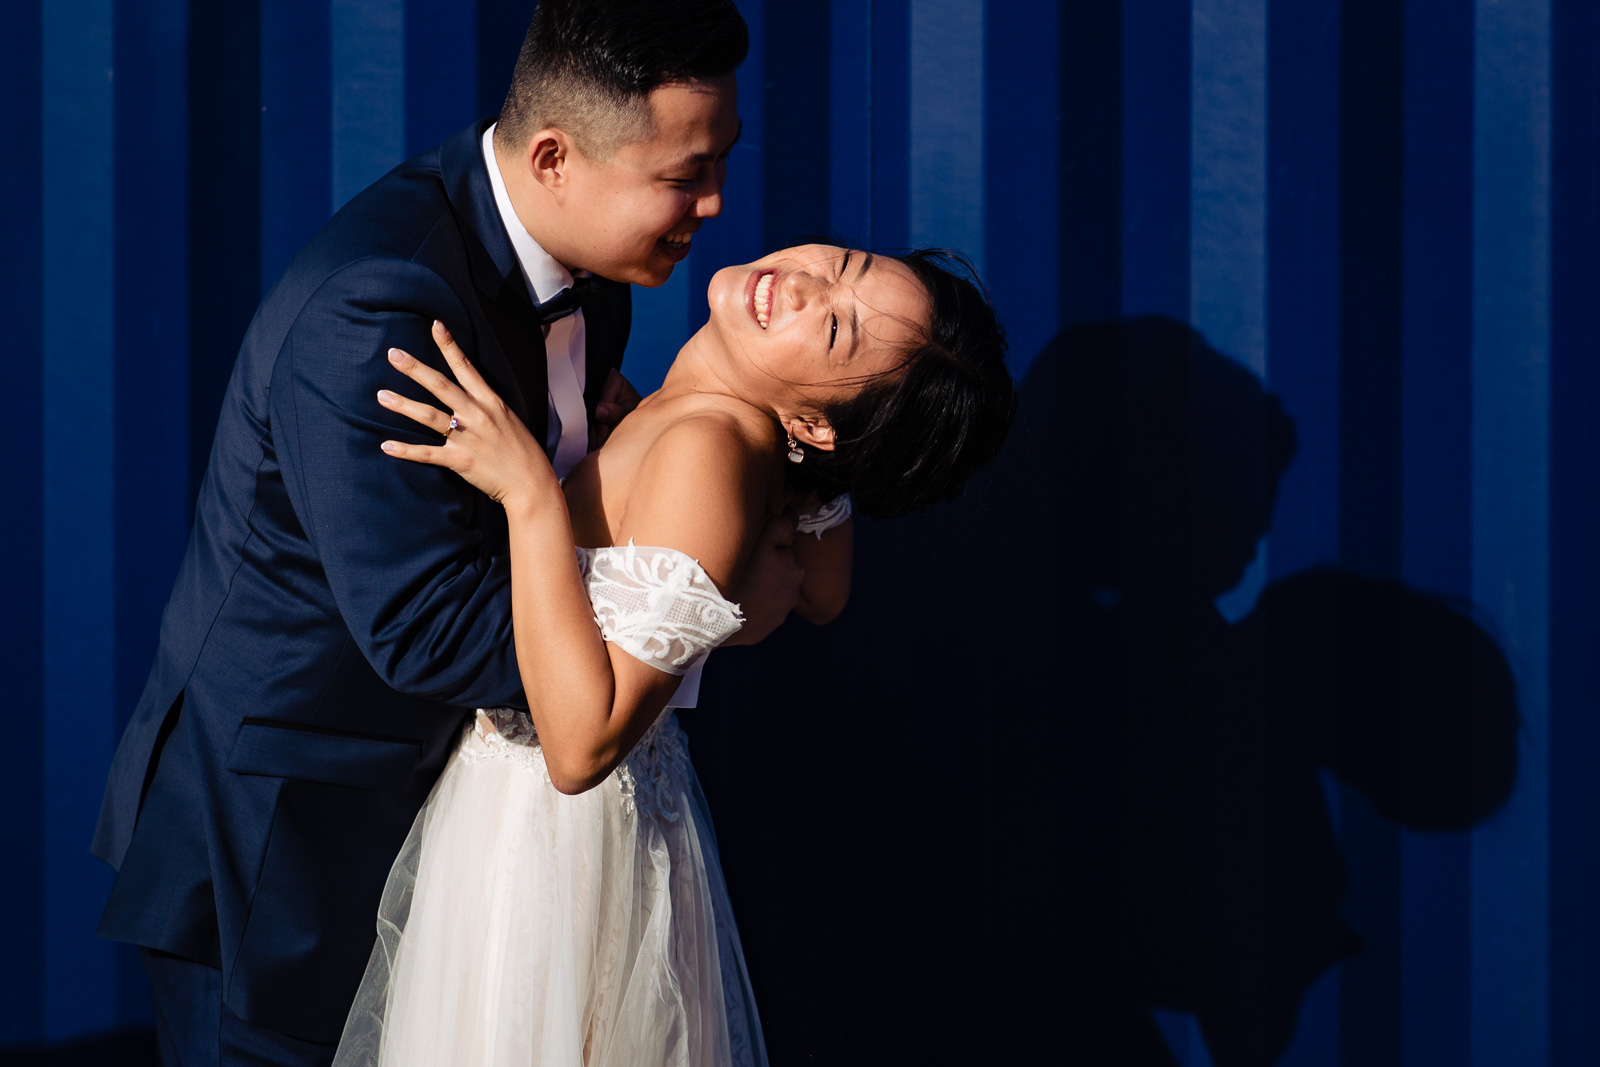 Chinees bruidspaar tijdens fotoshoot door bruidsfotograaf den haag